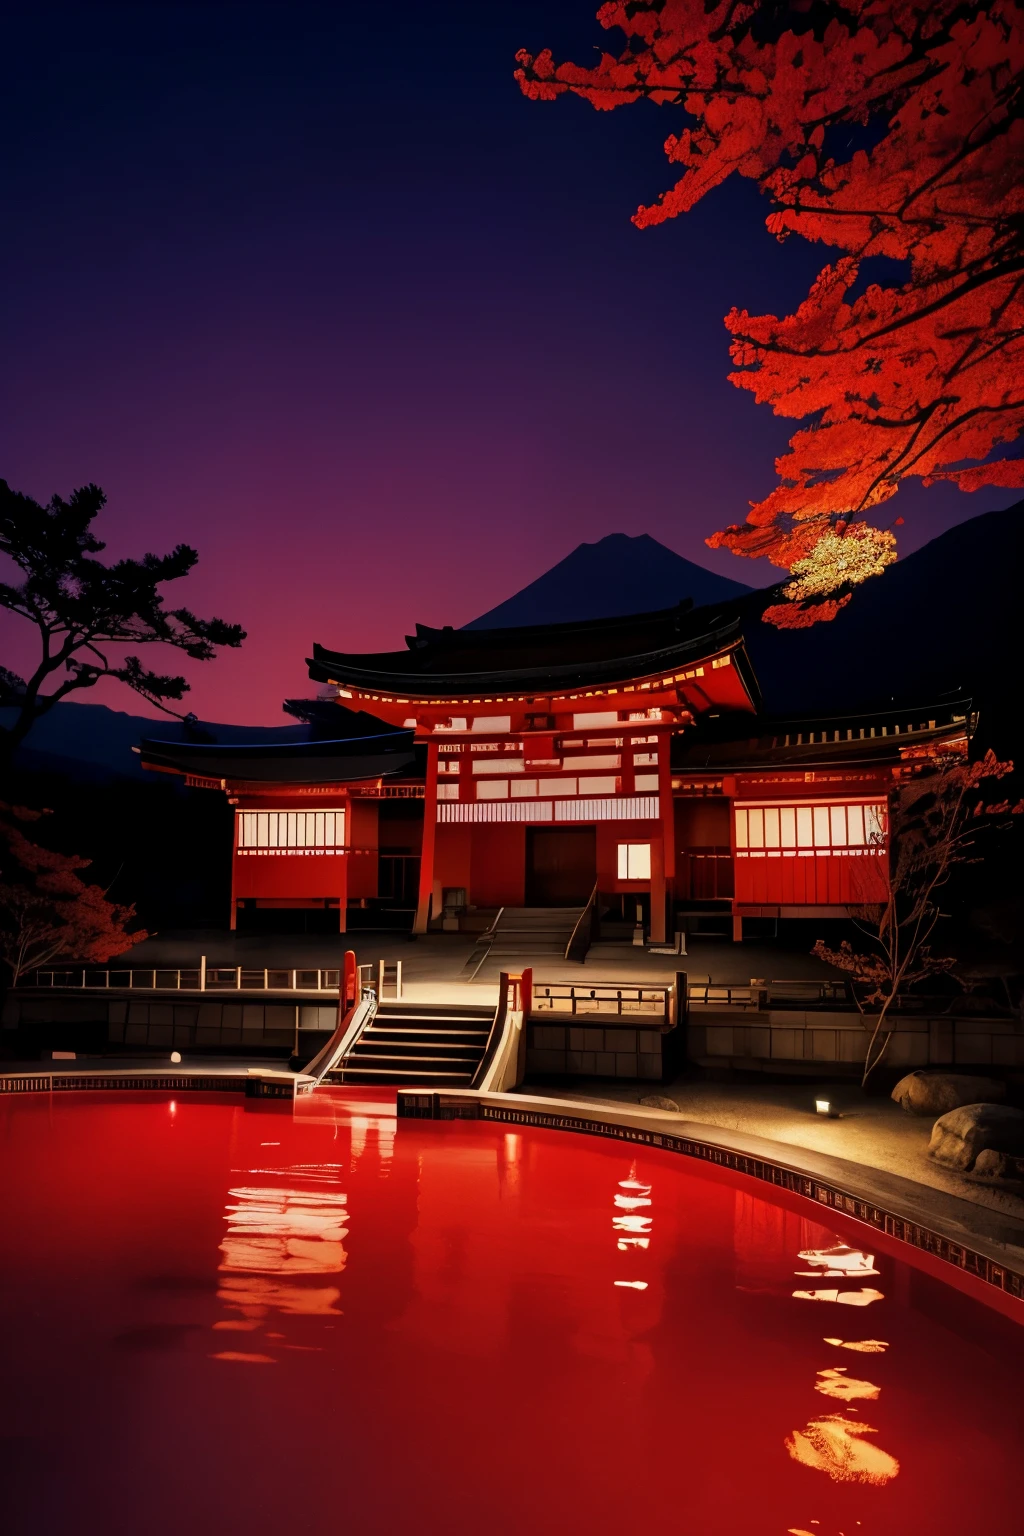 日本画風, Ukiyo-e style, 美術, 最高品質, 32K, RAW写真, 信じられないほど不条理な, 非常に詳細な, 地獄のリゾート, 血のように熱い温泉のプール, マグマ温泉, 赤紫色の光, ダークファンタジー, 繊細, 派手でダイナミックな描写